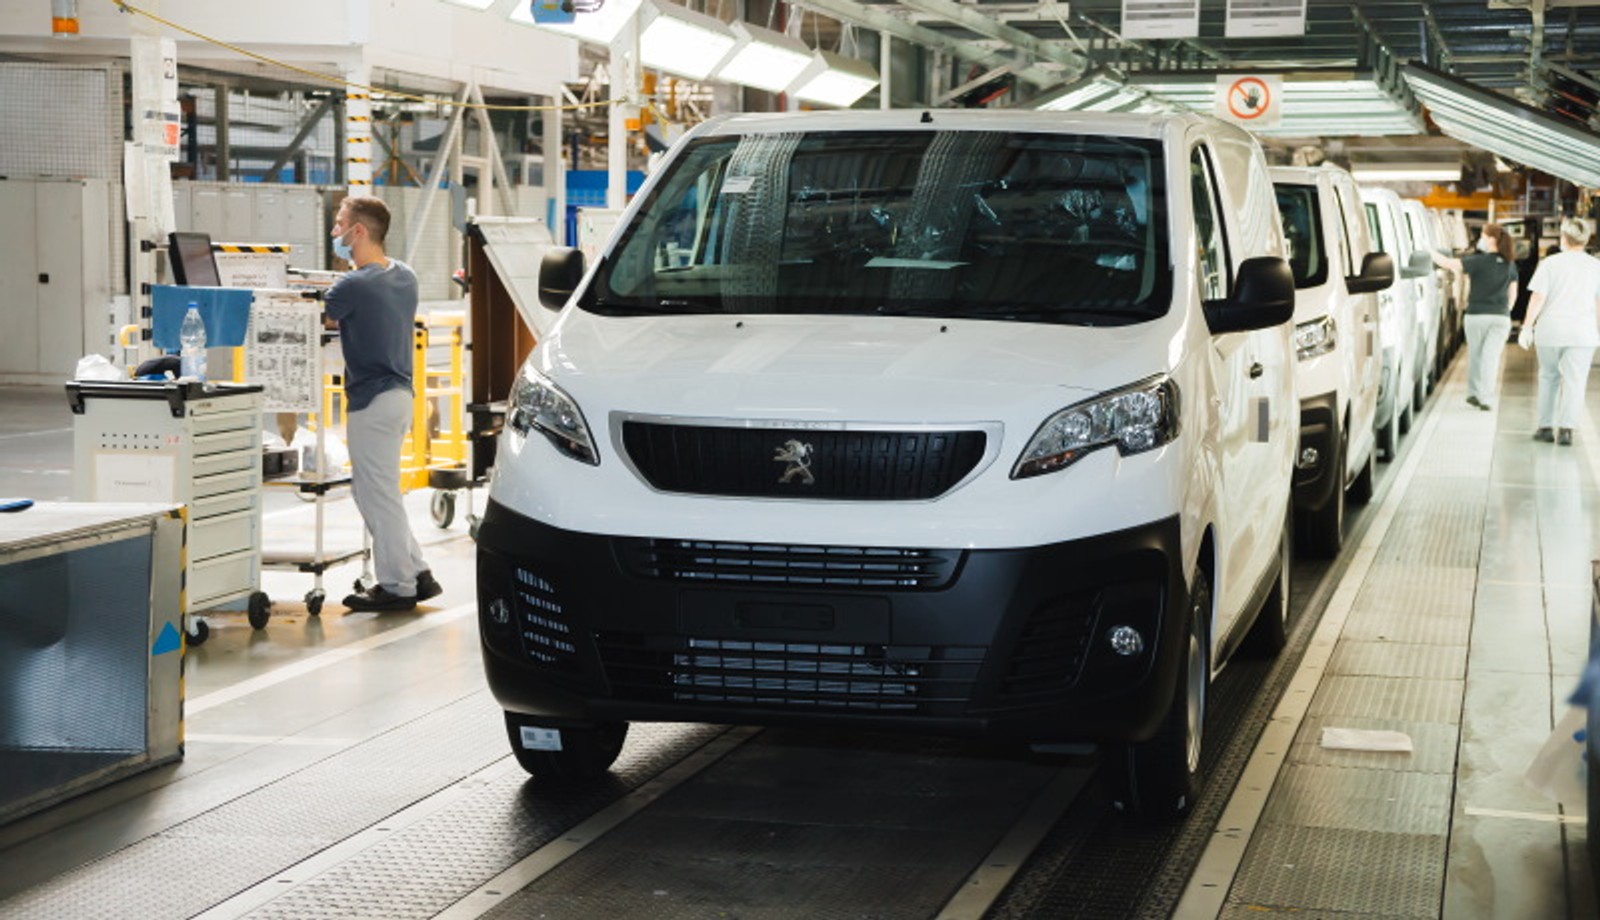 Производитель Peugeot, Opel и Citroen останавливает работу из-за санкций. В РФ остались 4 работающих завода, выпускающих легковые машины